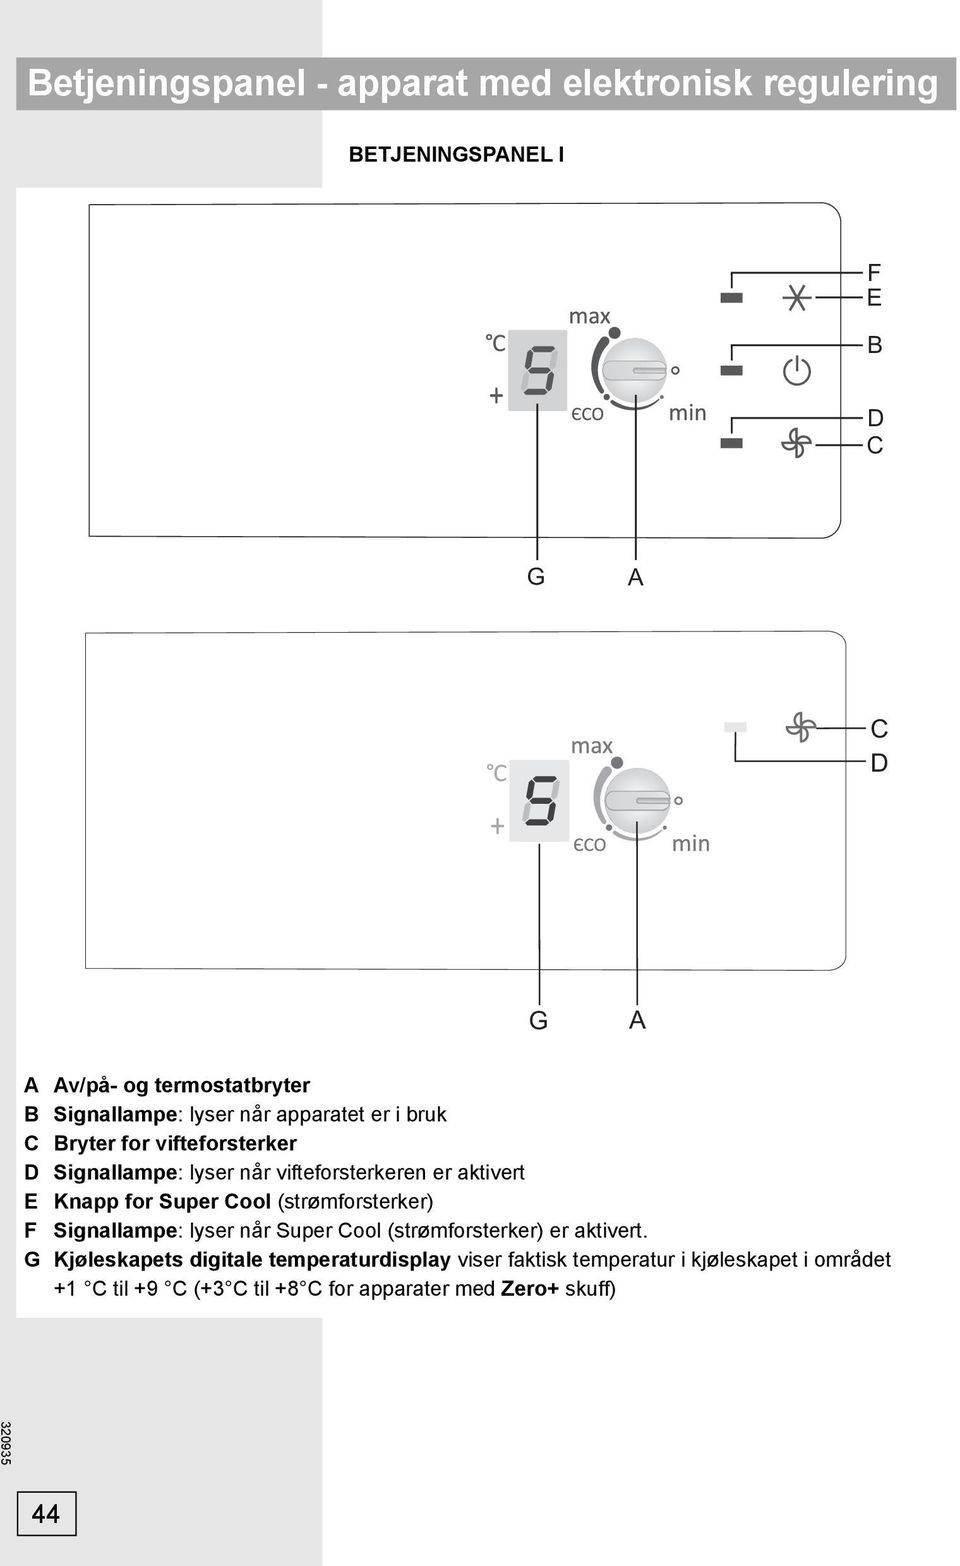 E Knapp for Super Cool (strømforsterker) F Signallampe: lyser når Super Cool (strømforsterker) er aktivert.